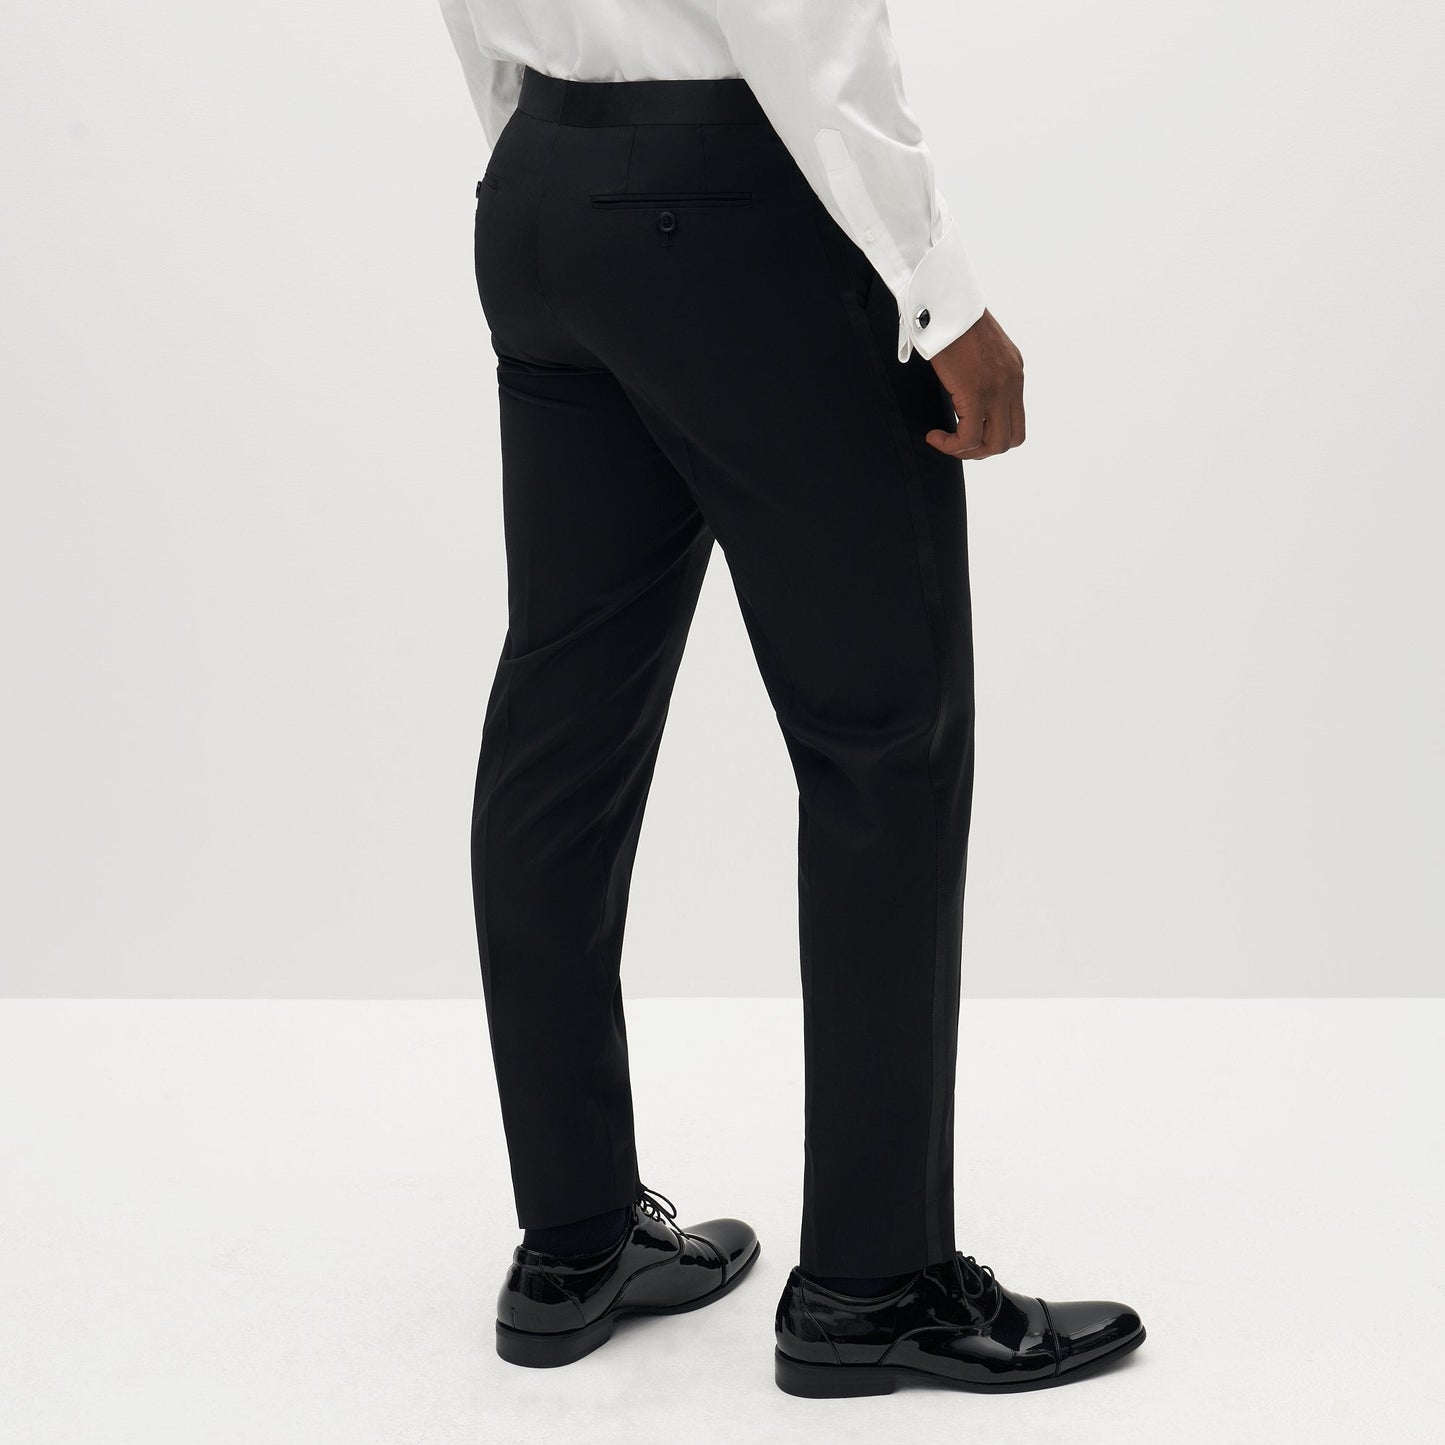 Classic Black Tuxedo Pants by SuitShop